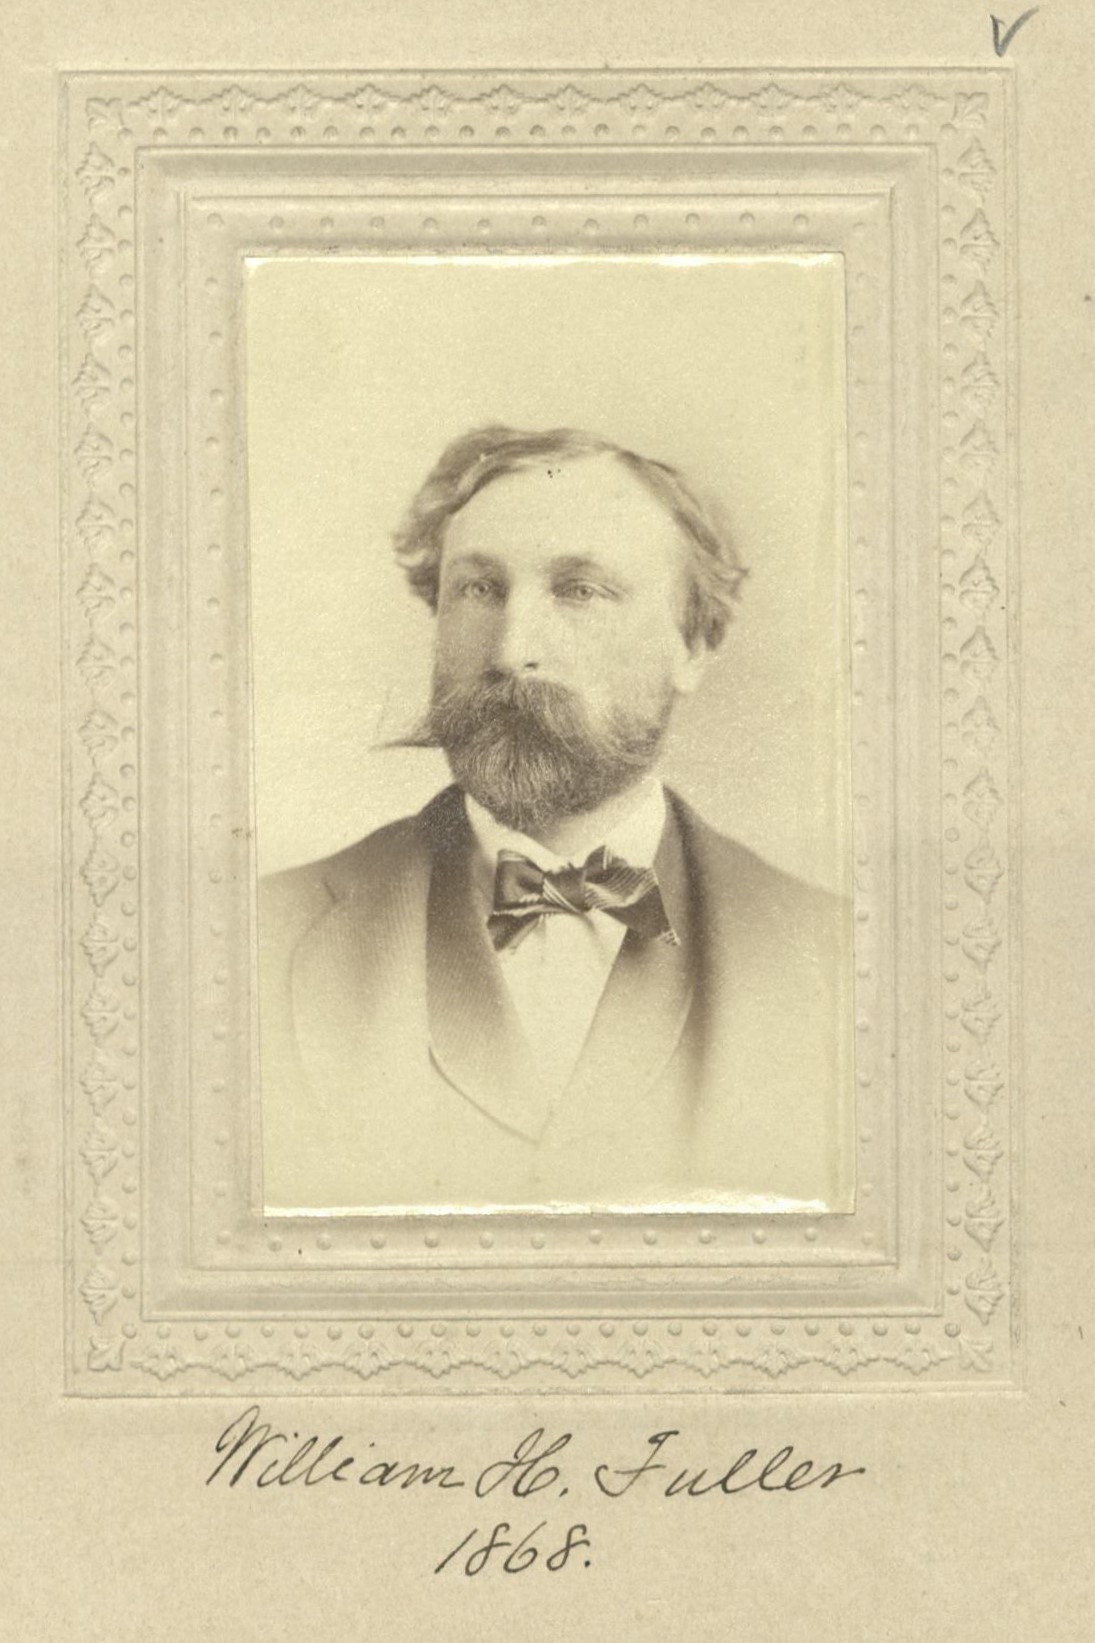 Member portrait of William H. Fuller